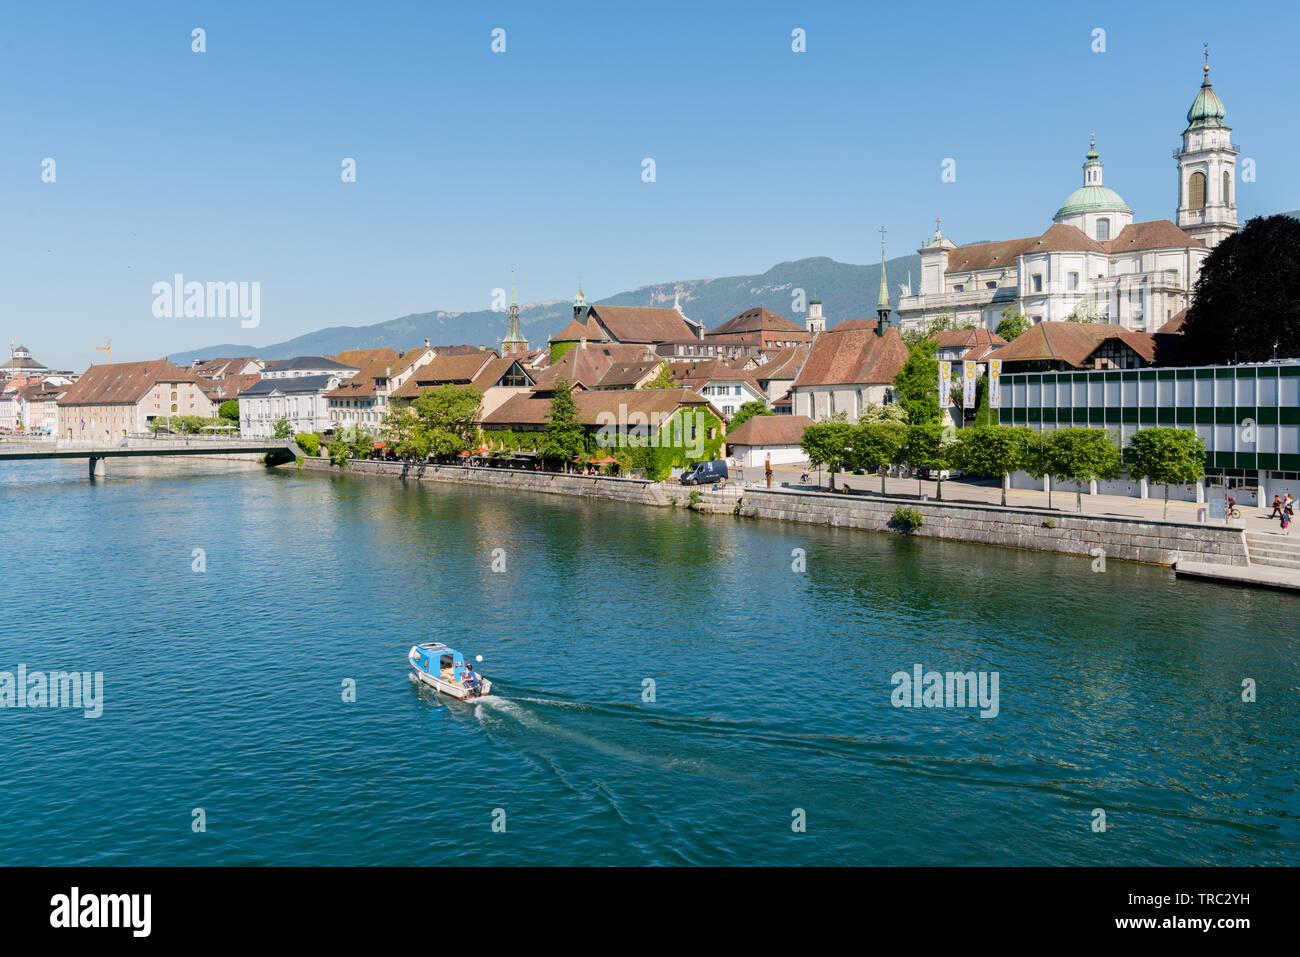 Solothurn, SO/Schweiz - vom 2. Juni 2019: Stadt Solothurn mit dem Fluss Aare panorama Stadtbild Blick auf die Altstadt und ein Fischerboot Überschrift Stockfoto